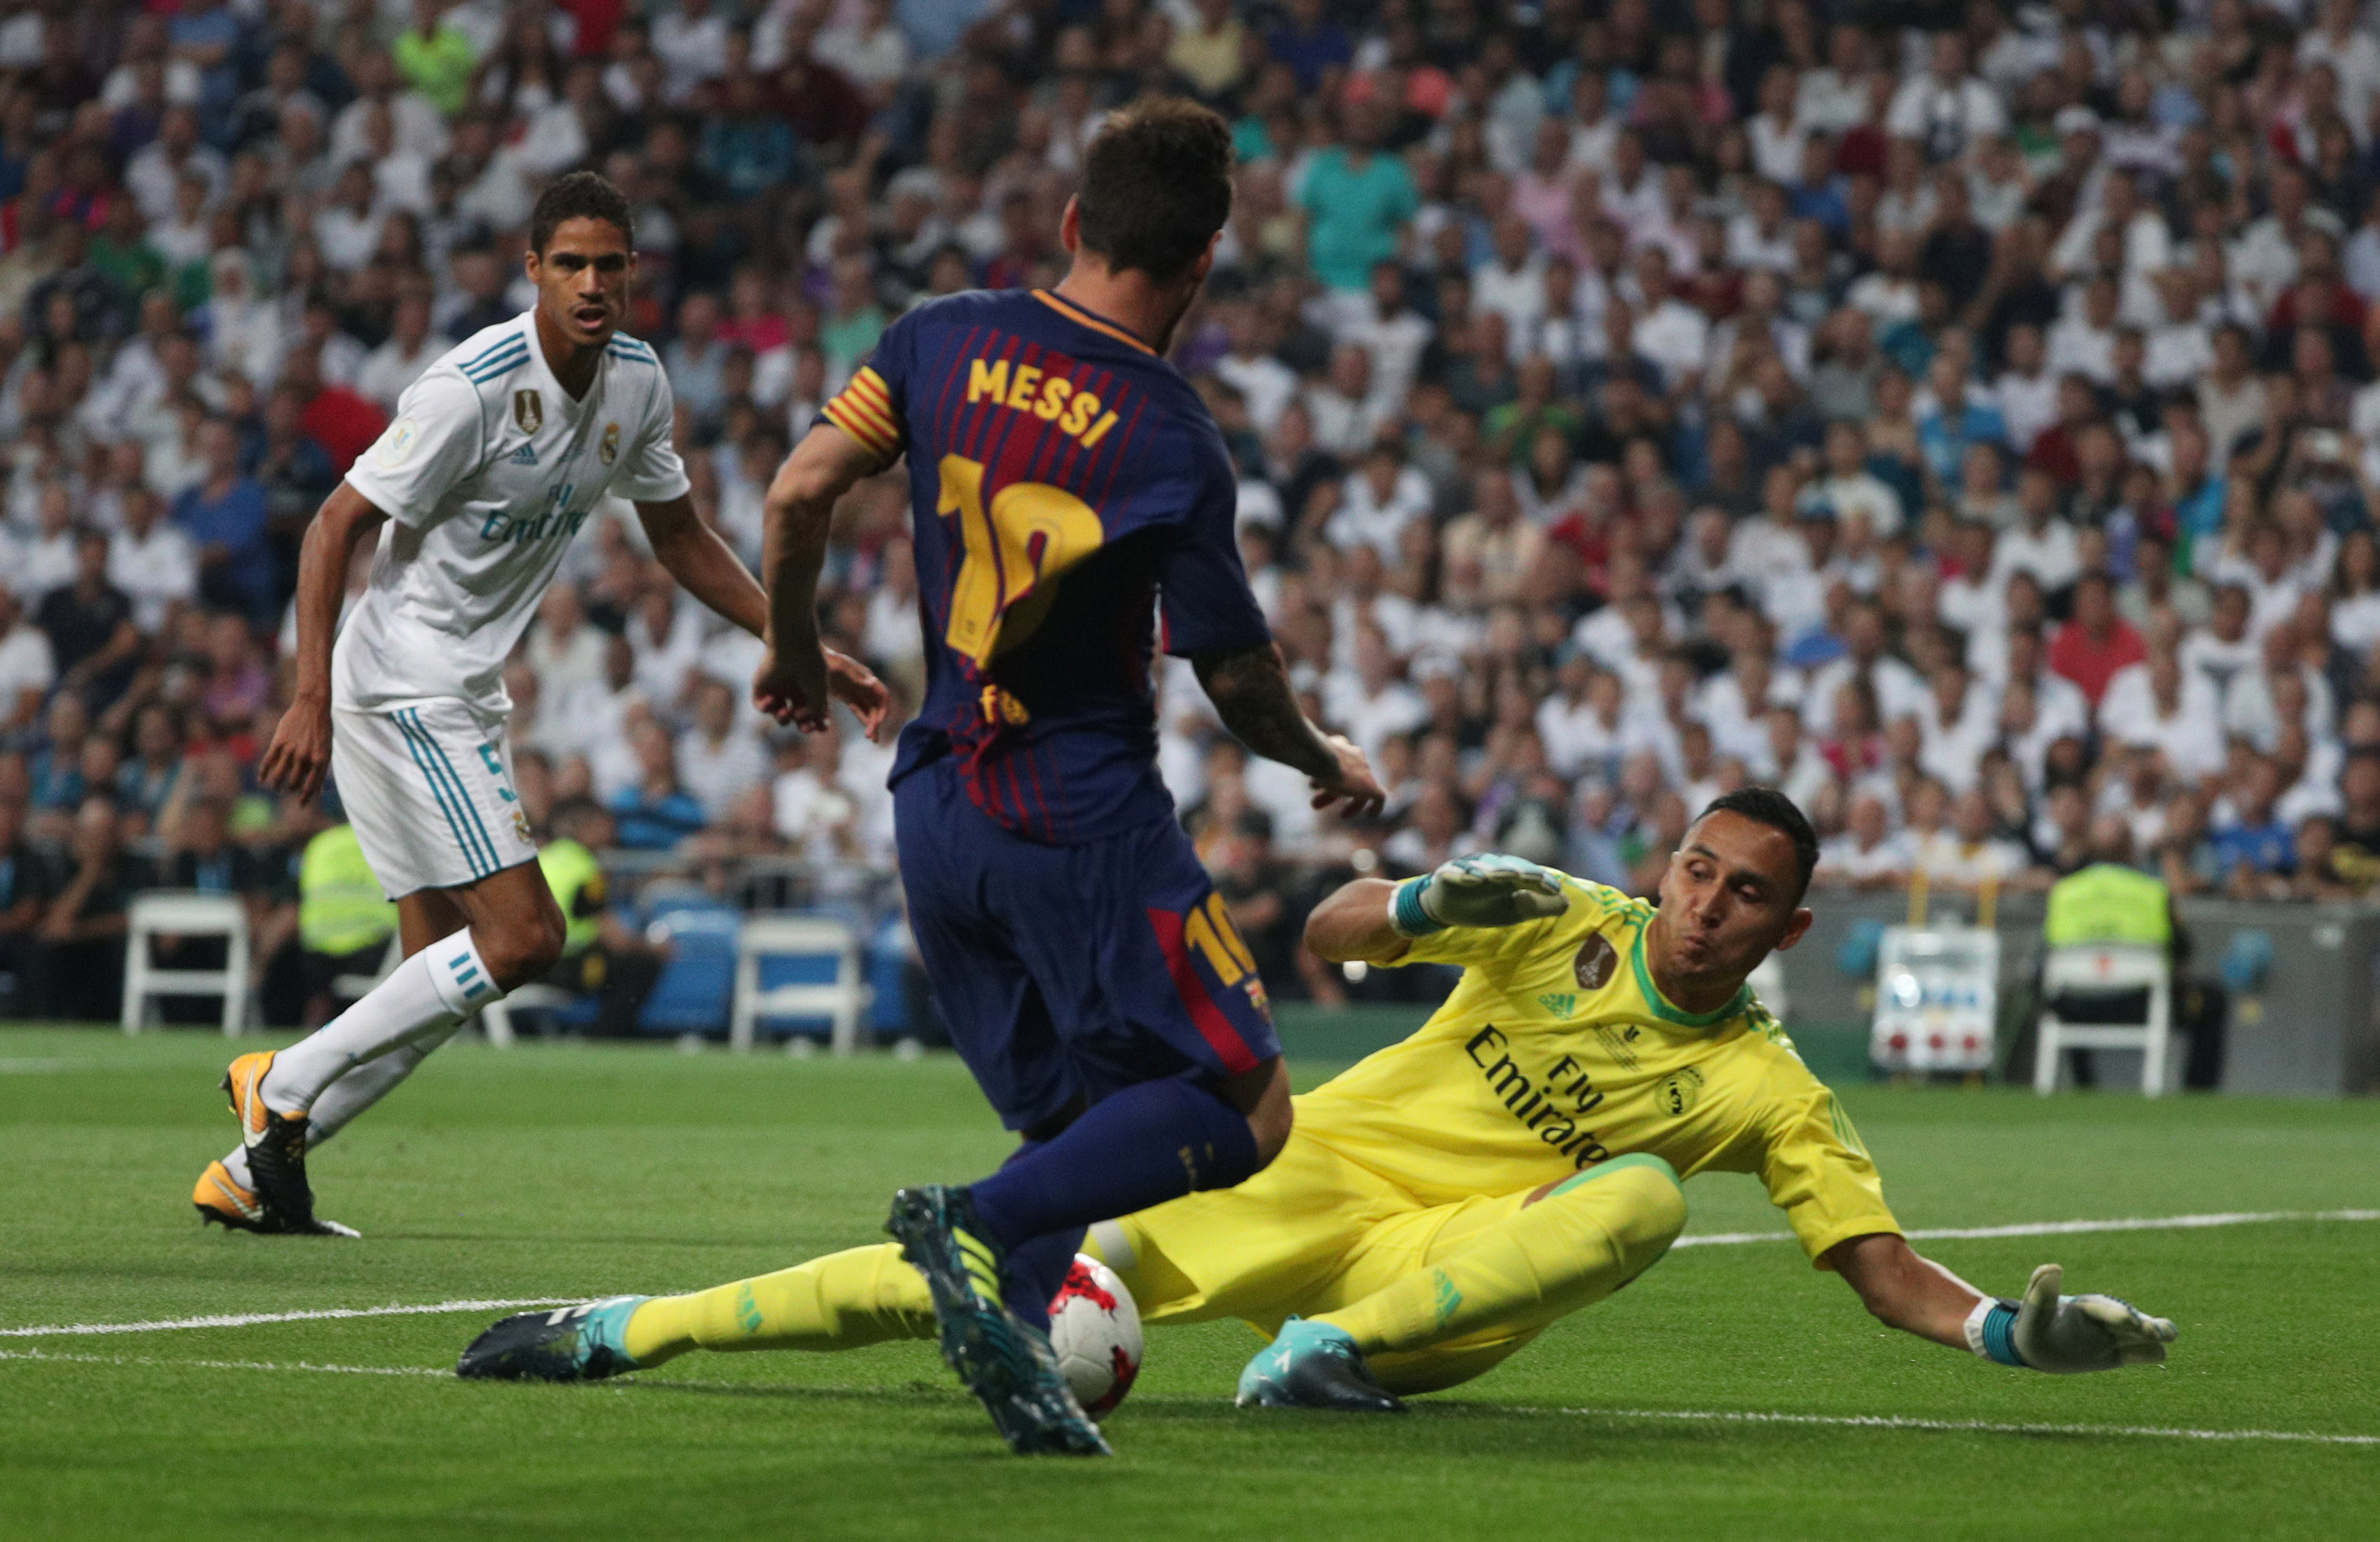 Nỗ lực dứt điểm của Messi bị thủ môn Navas cản phá. Ảnh: REUTERS